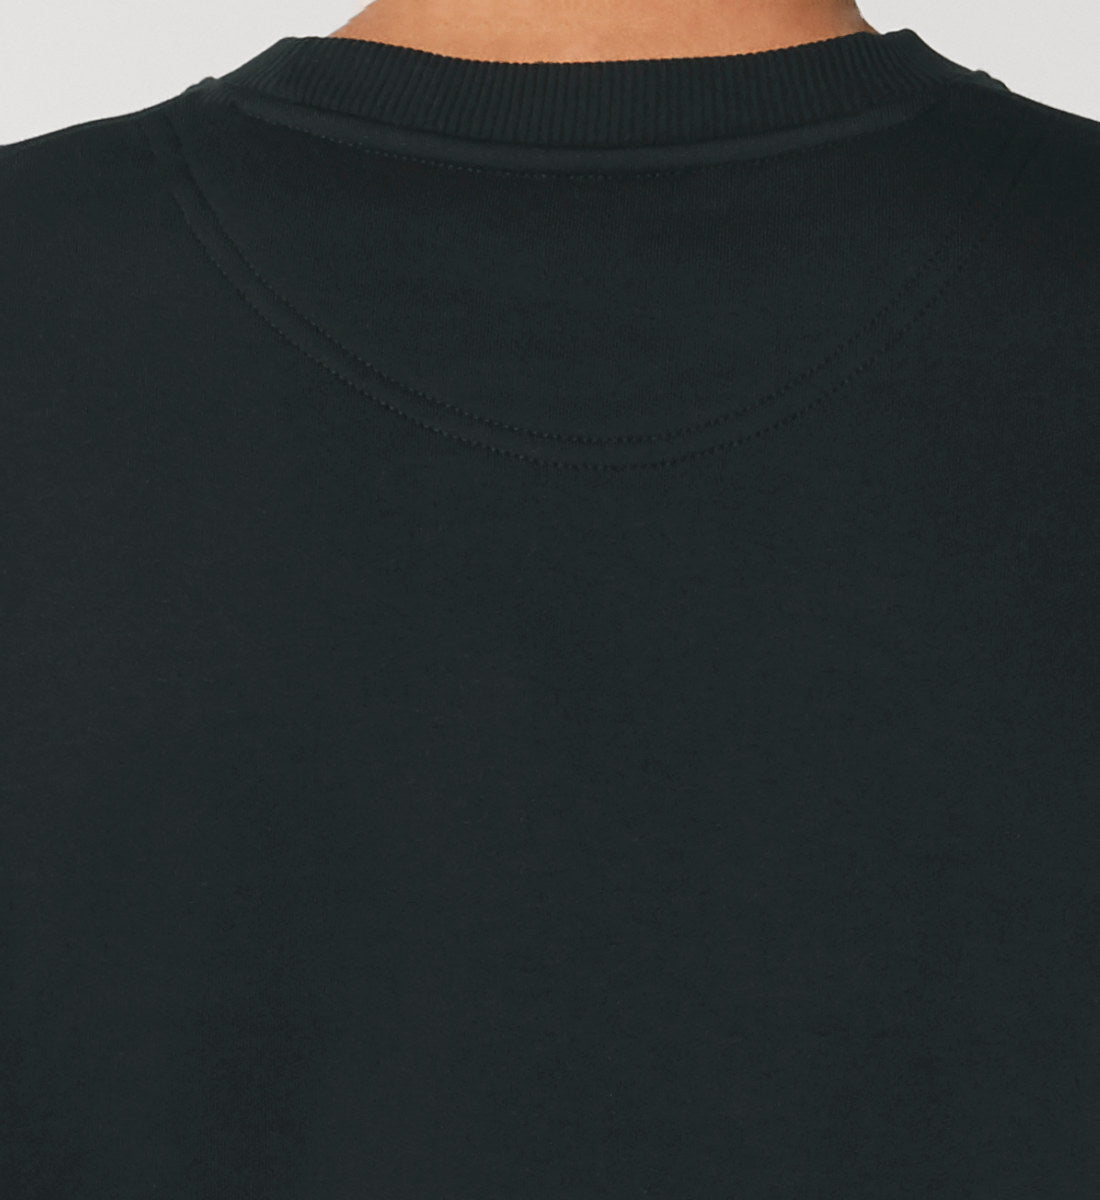 Schwarzes Sweatshirt Unisex für Frauen und Männer bedruckt mit dem Design der Roger Rockawoo Kollektion E-Gitarren Single Coil Set Up